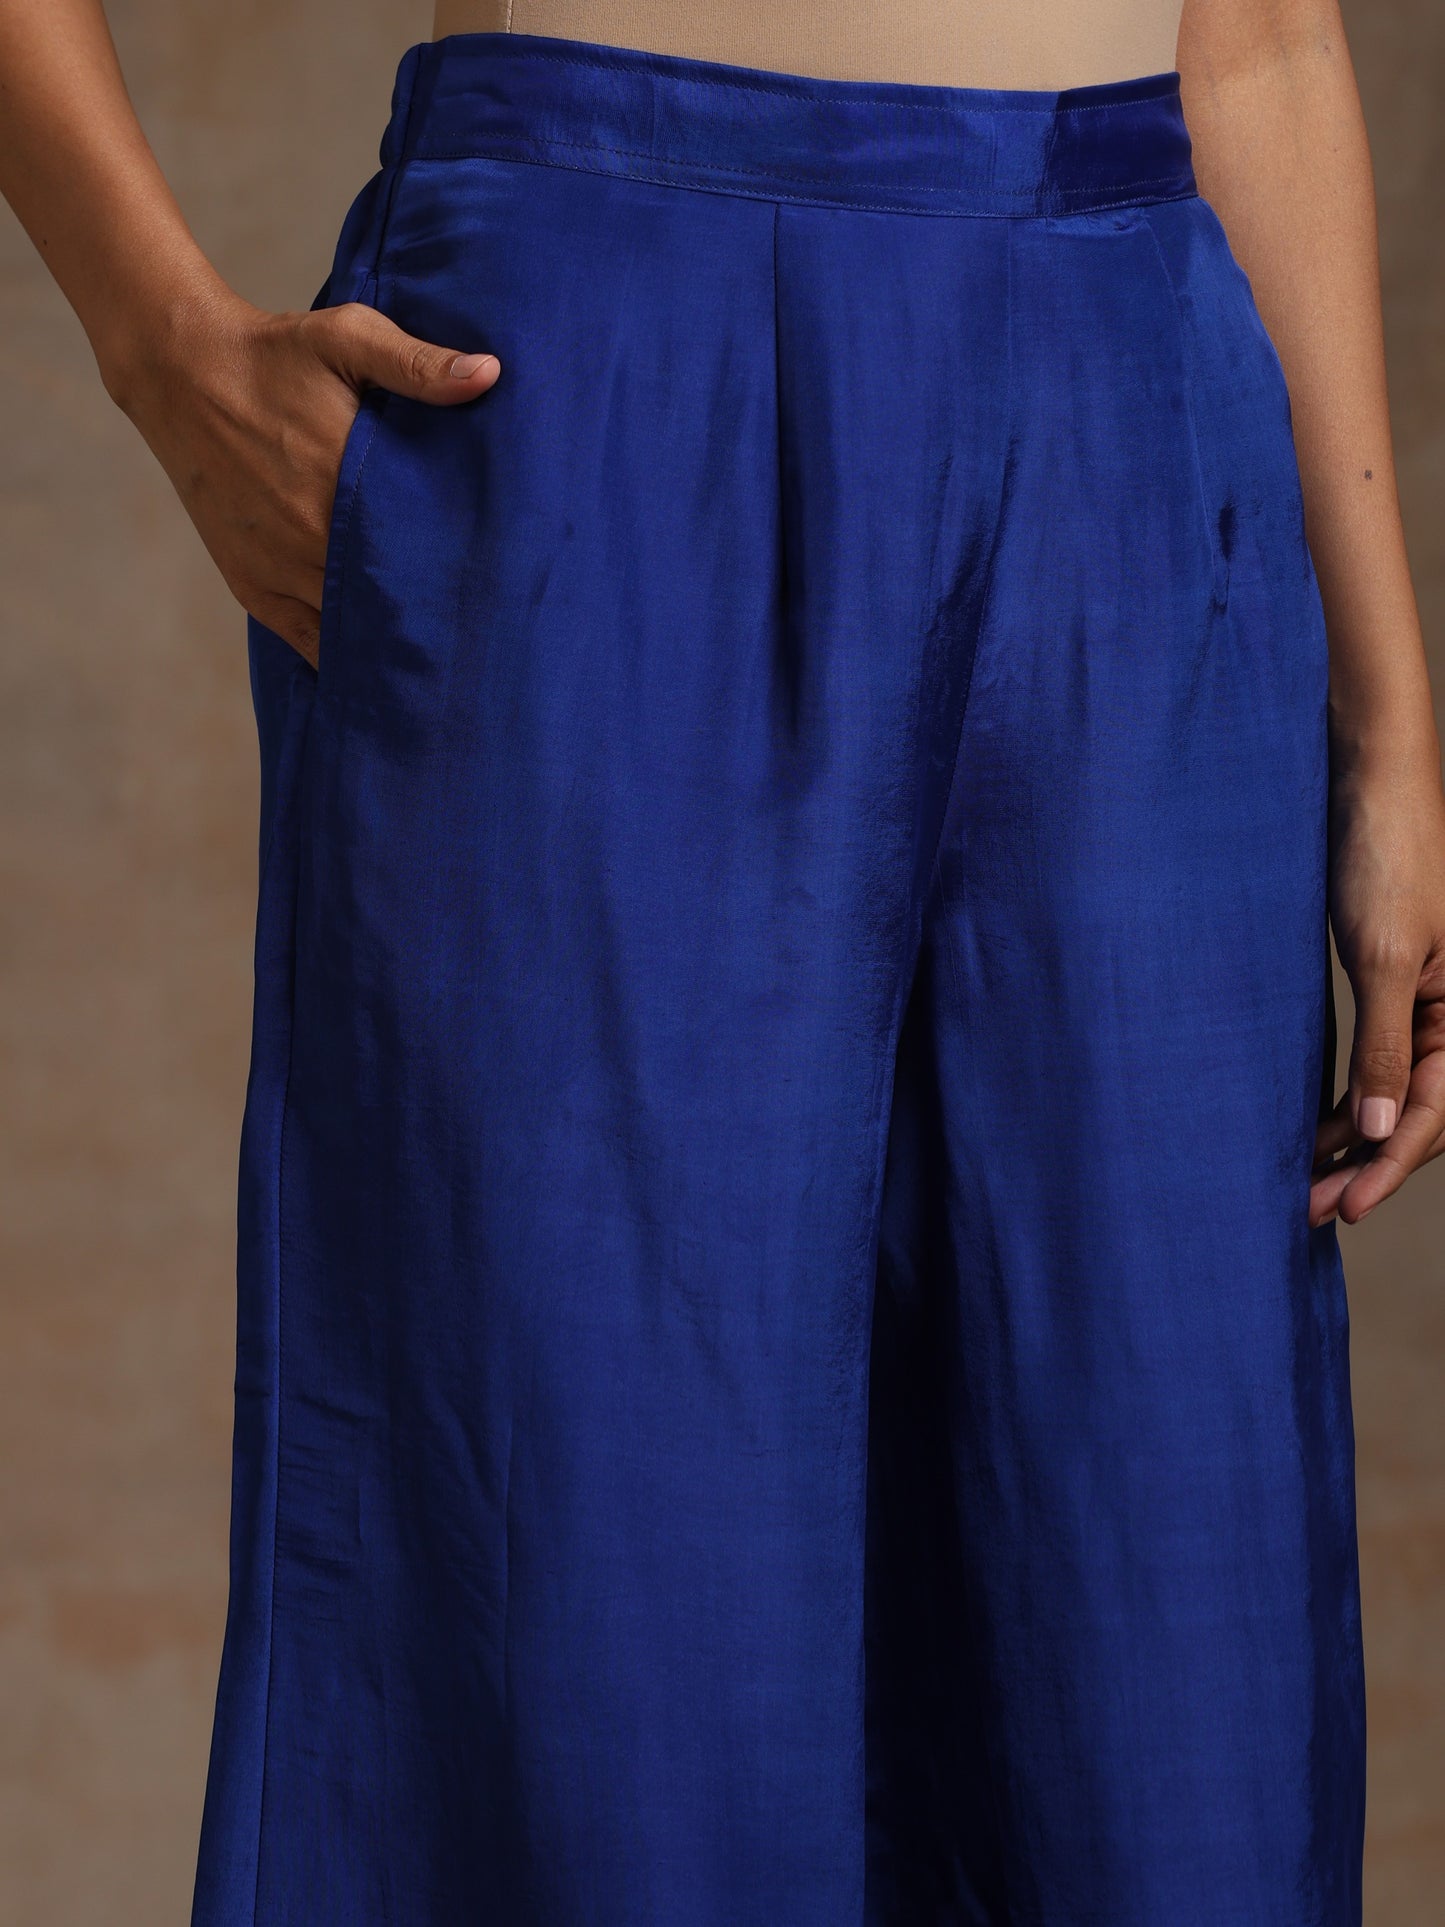 Bandhan Royal Blue with Orange Dupatta Suit Set